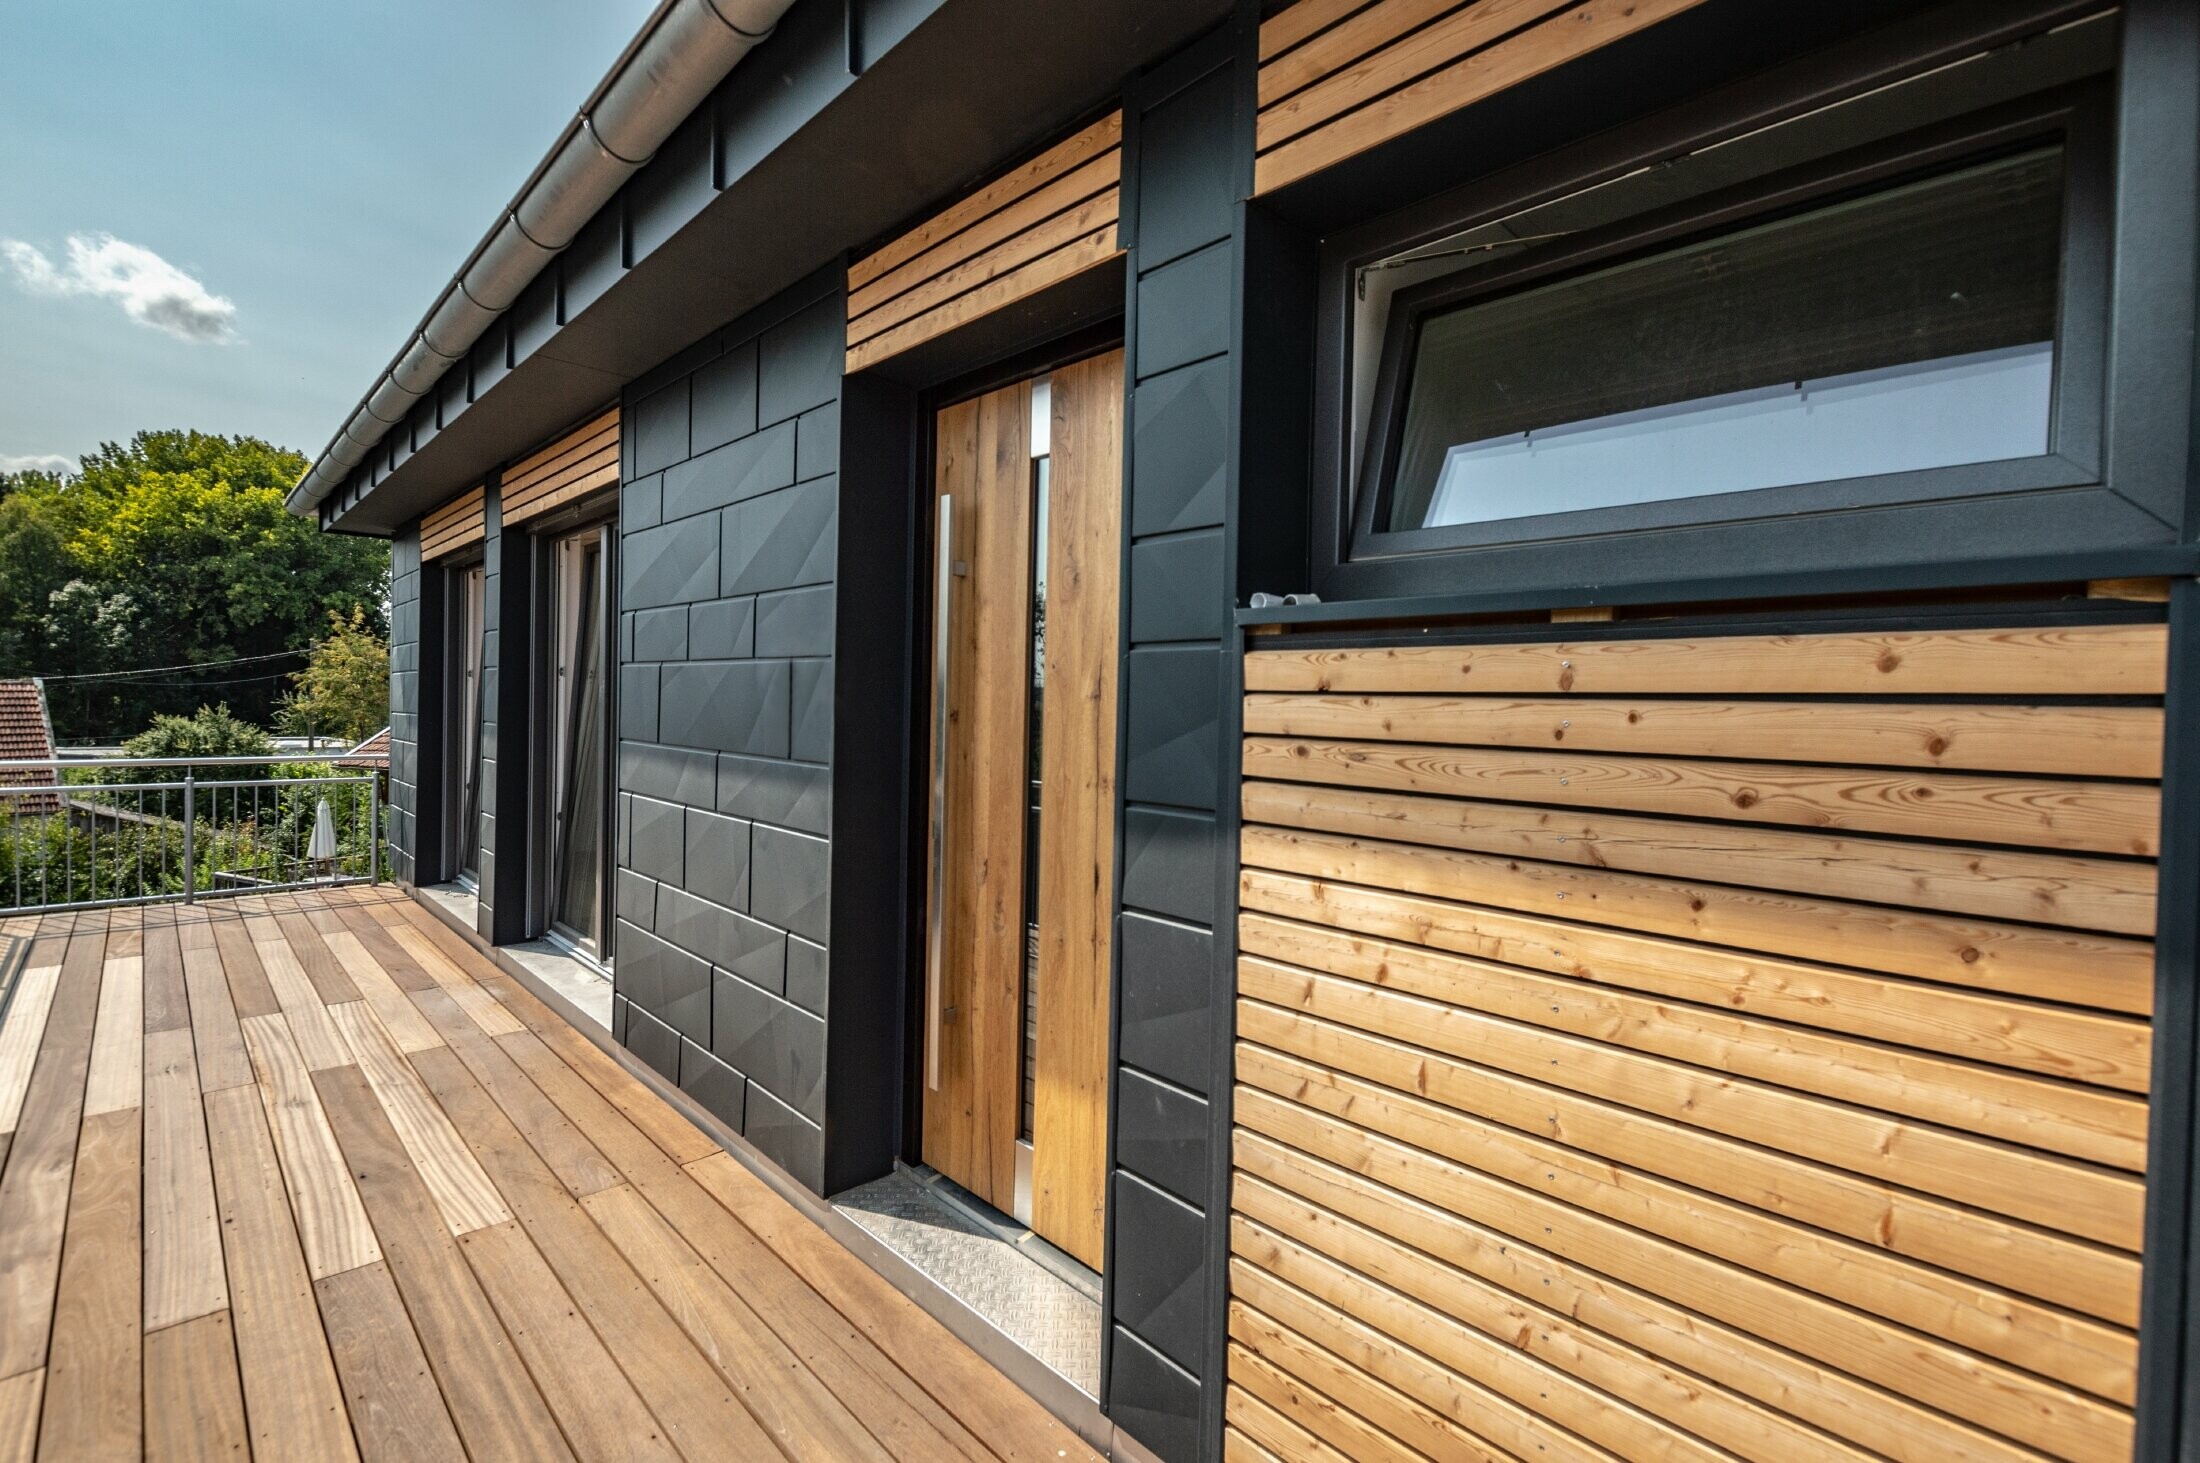 Design della facciata con combinazione di materiali alluminio - PREFA doga.X in antracite - e modanature orizzontali in legno.